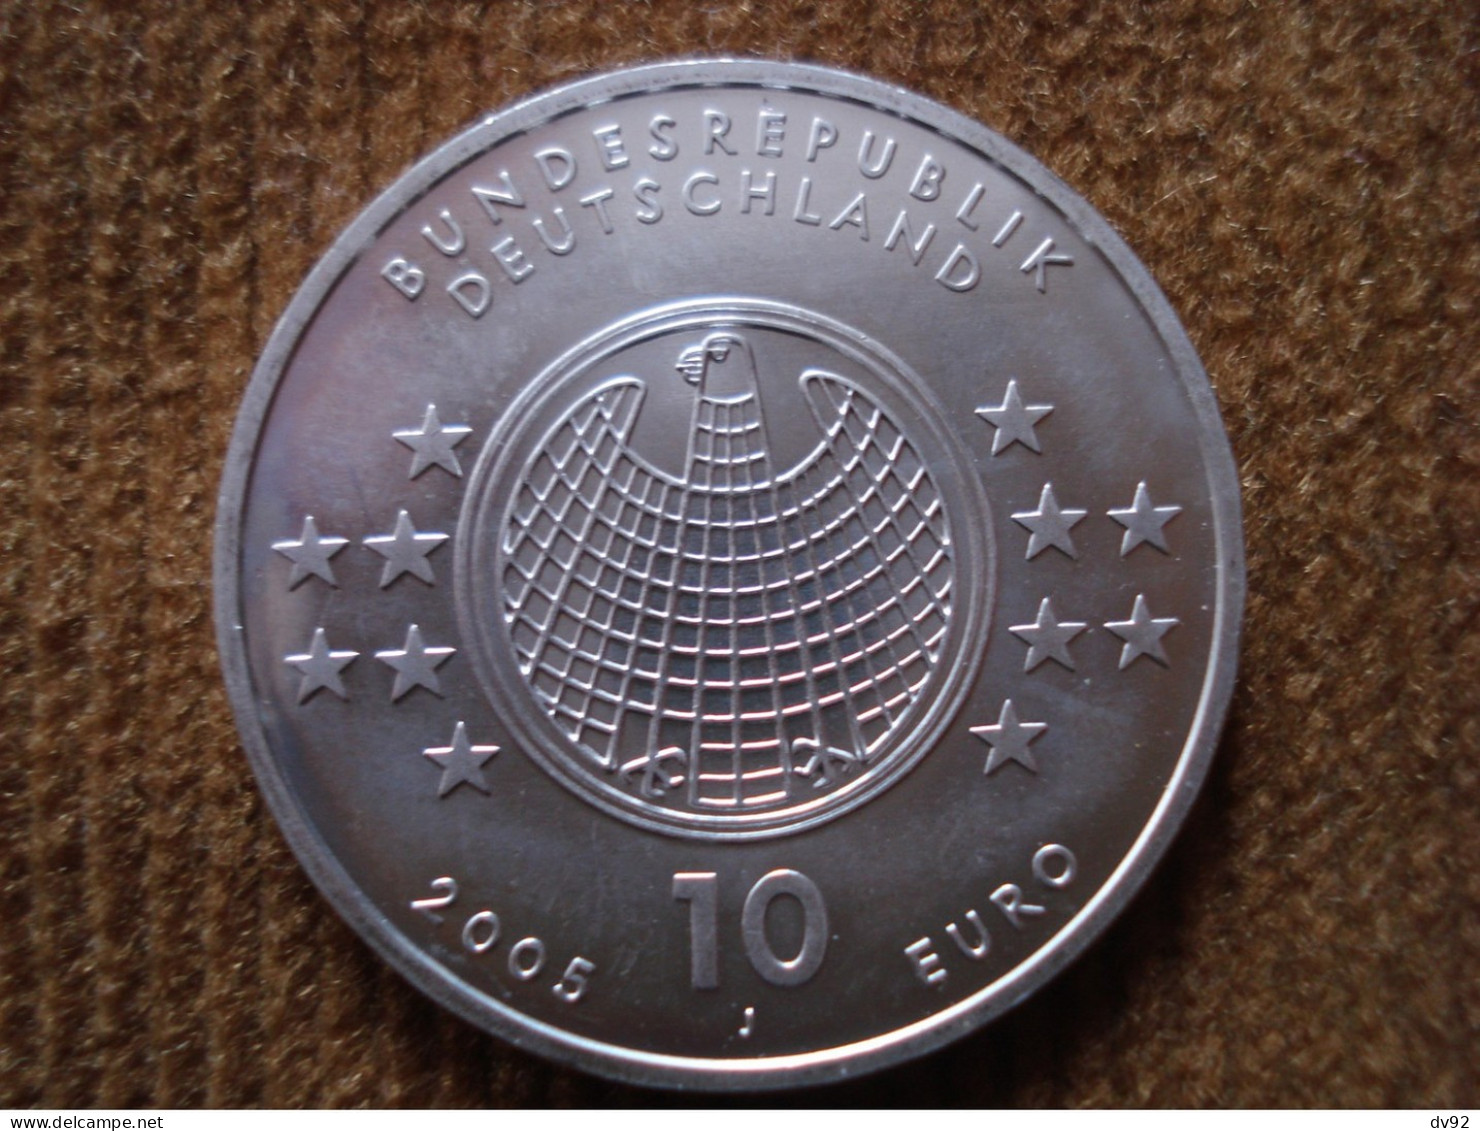 ALLEMAGNE 10 EUROS ALBERT EINSTEIN - Gedenkmünzen